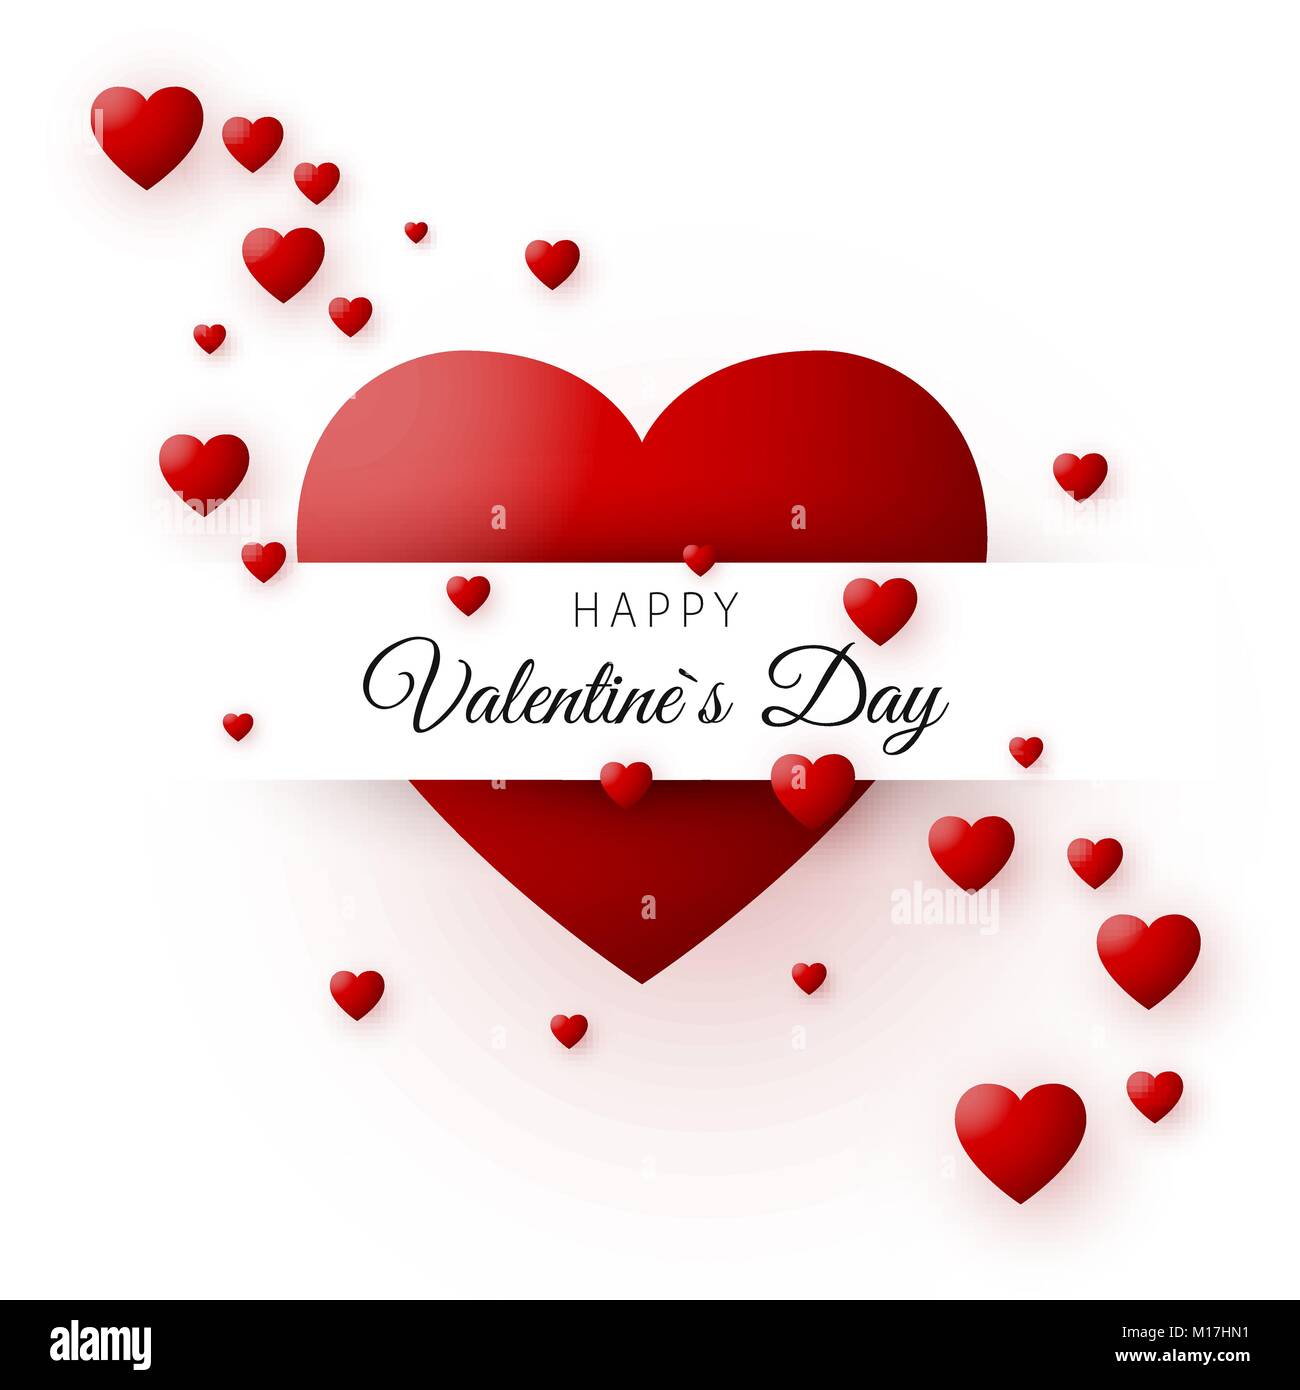 Cuore rosso - il simbolo dell'amore. Valentines Day card o banner. Modello per il poster e il design del legatore. Illustrazione di vettore isolato su sfondo bianco Illustrazione Vettoriale